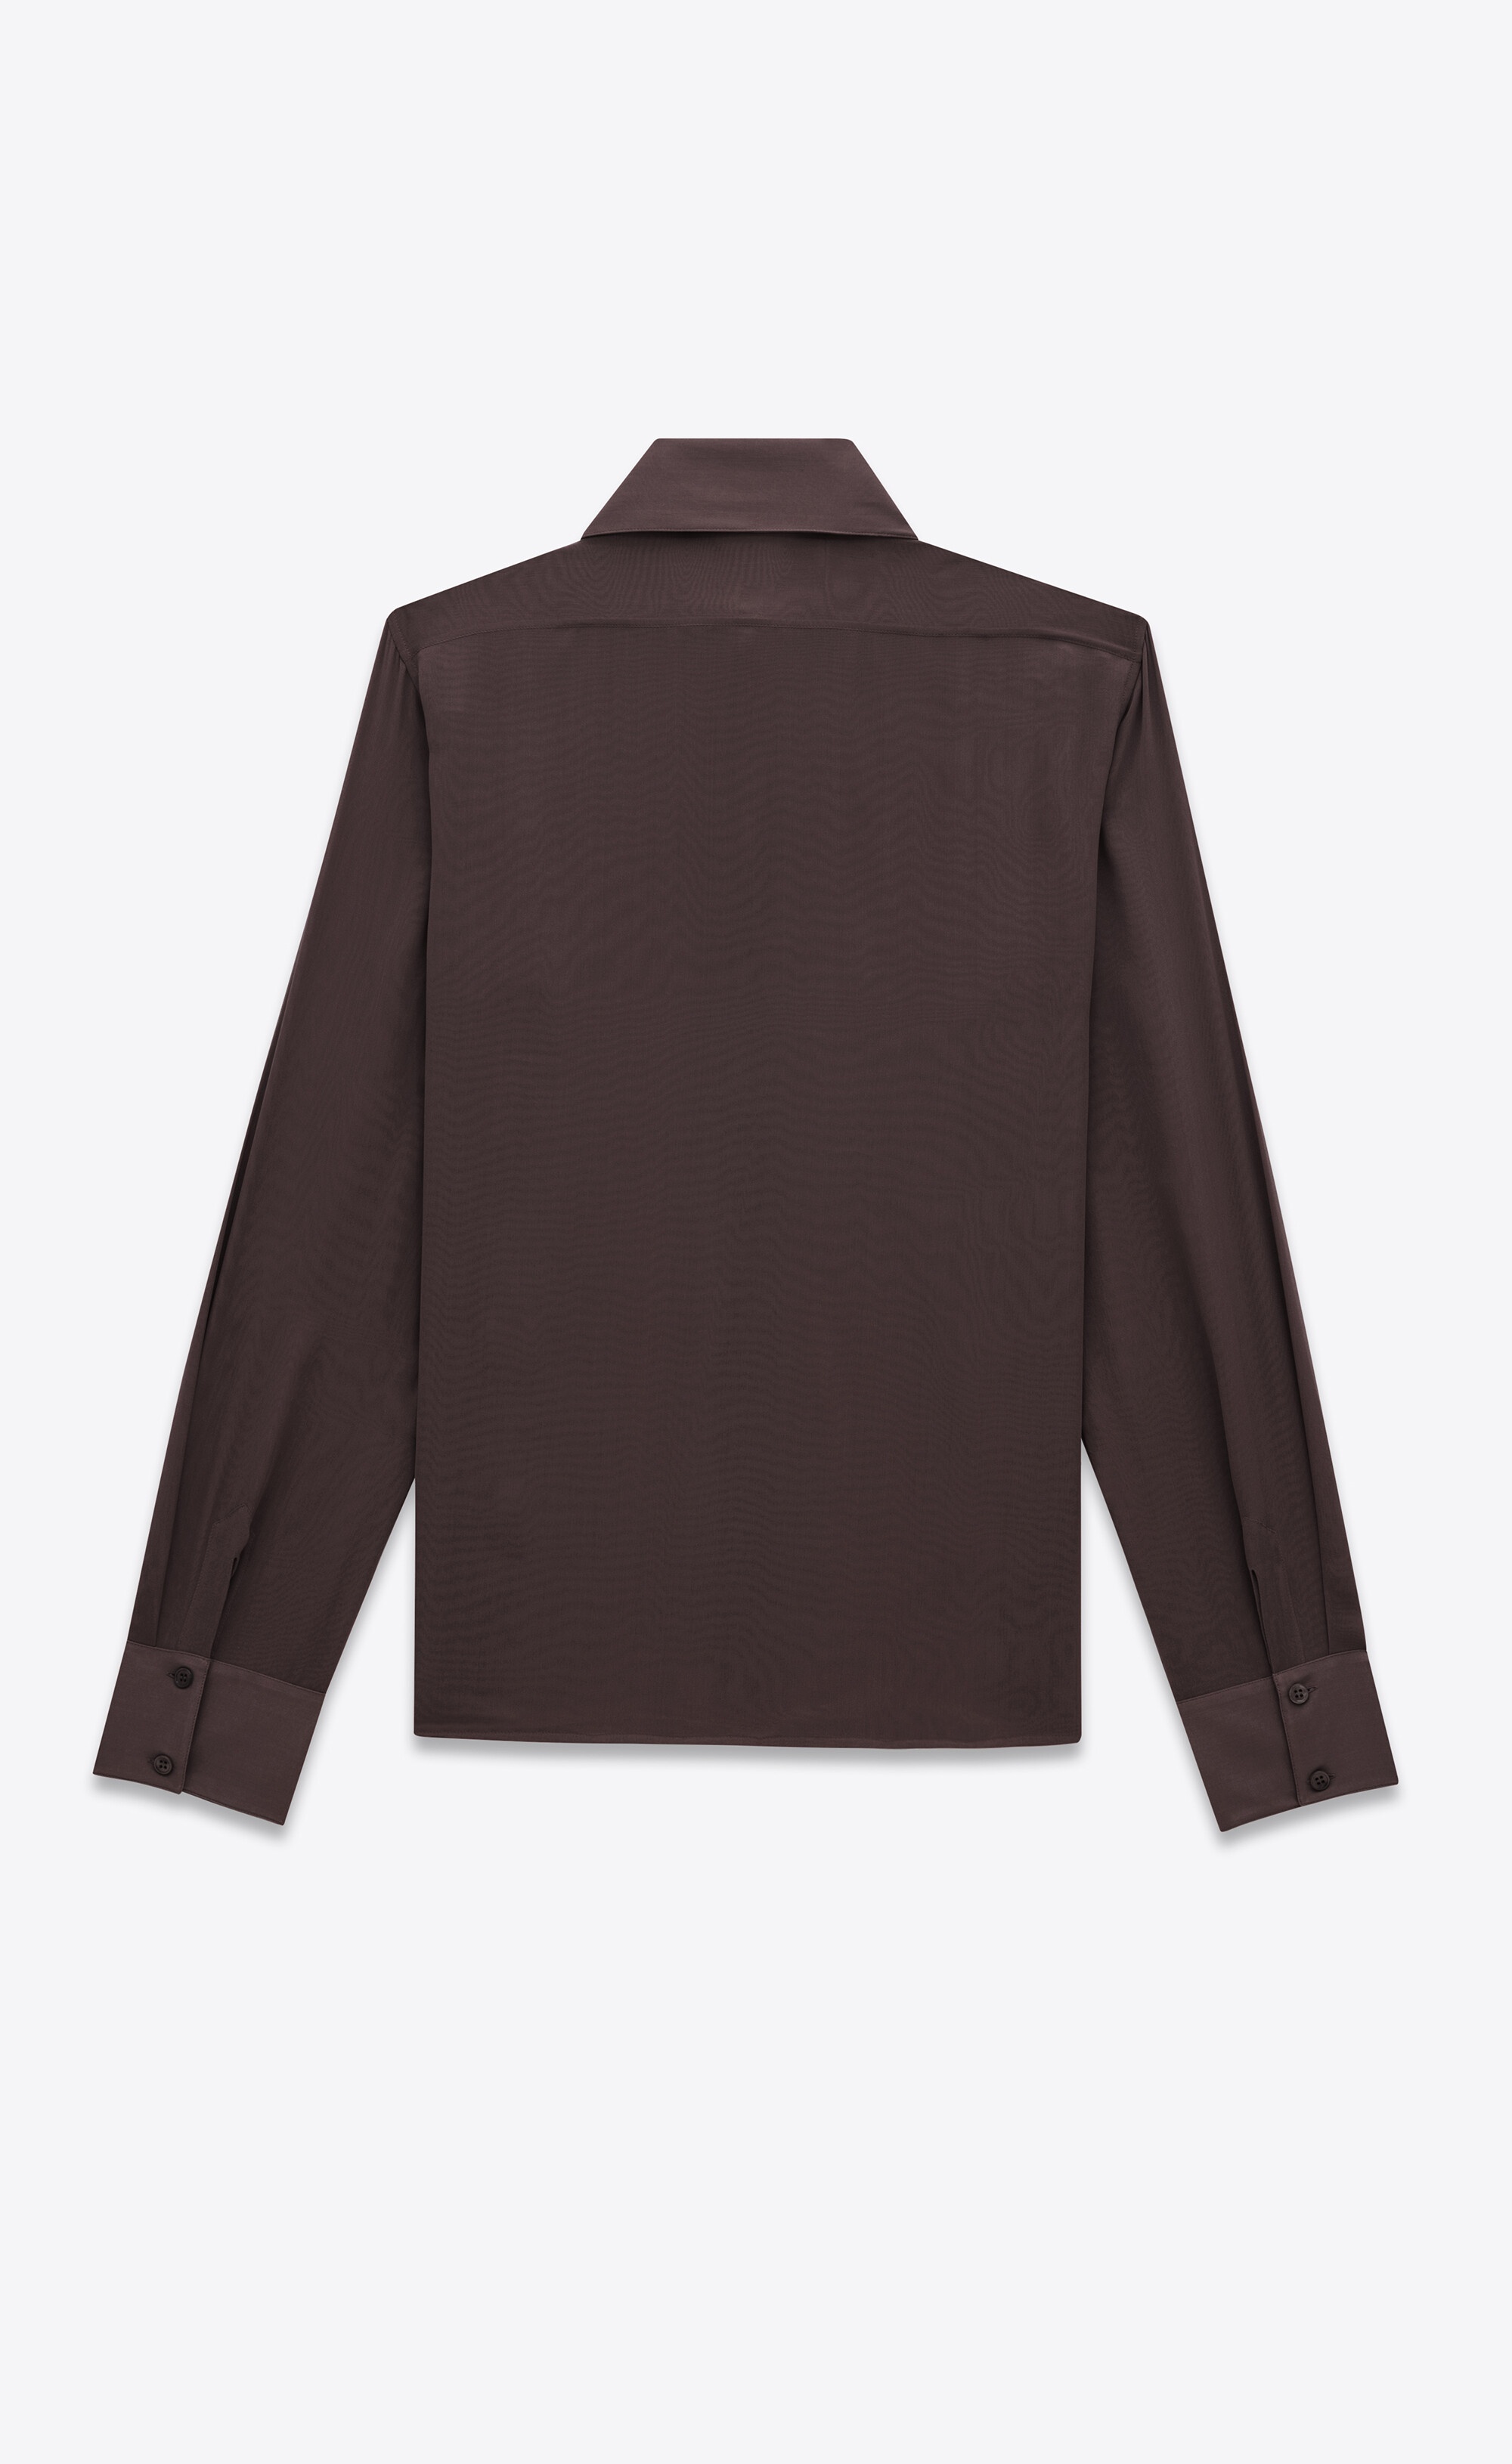 SAINT LAURENT shirt in silk crepe muslin | REVERSIBLE